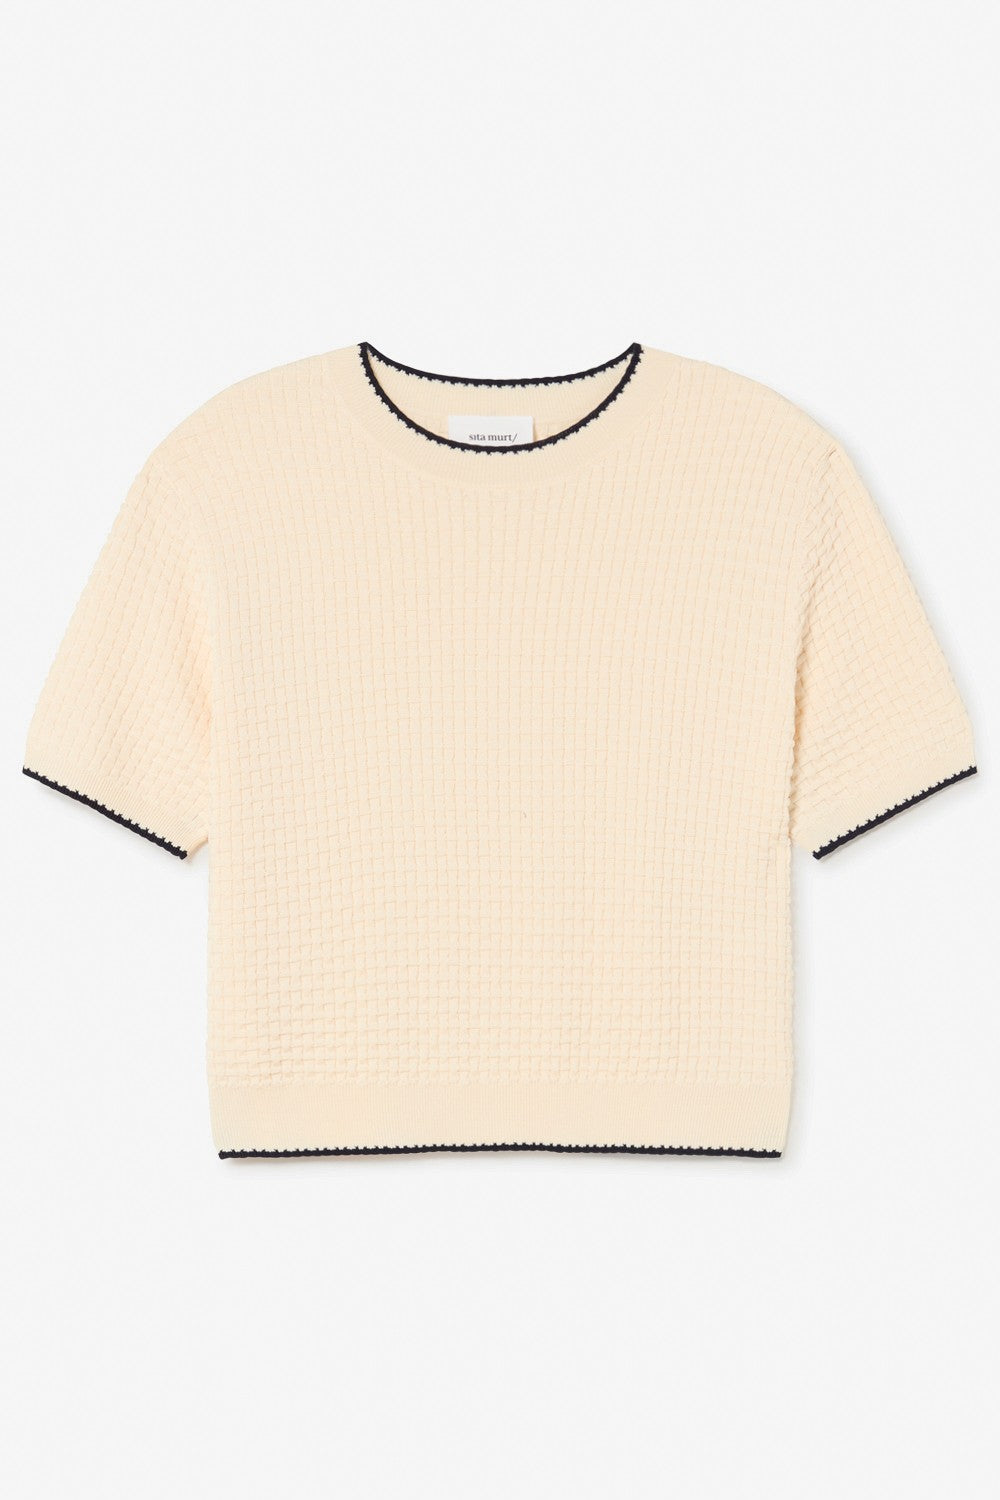 SITA MURT-Fully Fashioned Sweater Ecru